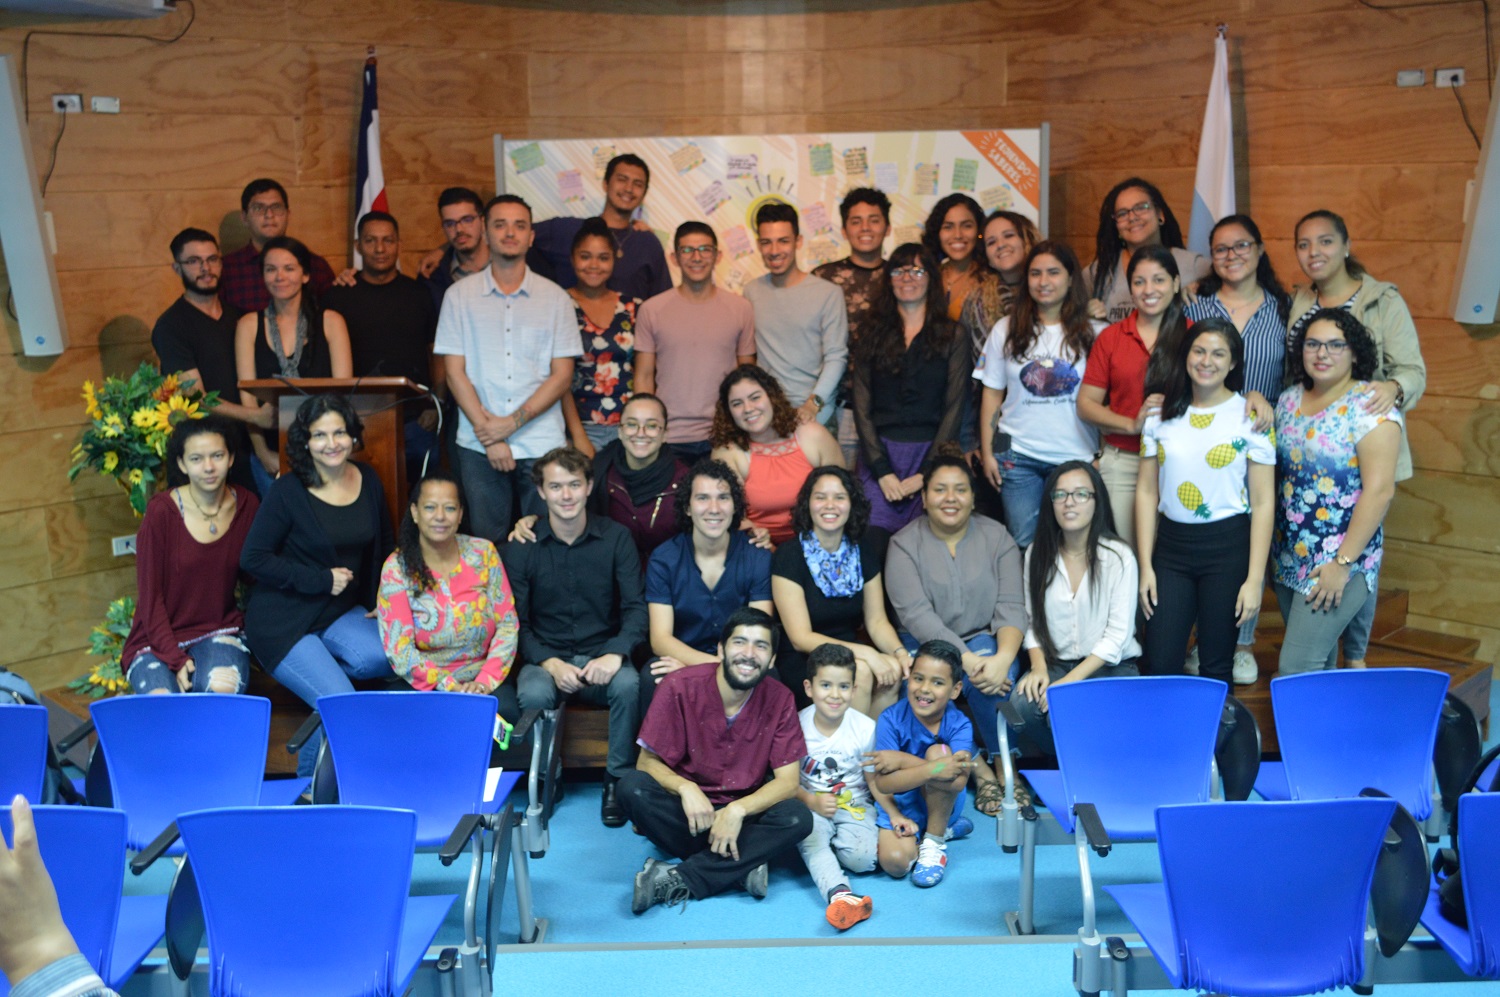 48 estudiantes de diferentes carreras y sedes desarrollaron proyectos durante el 2018. Foto por Leonardo Garita Alvarado.